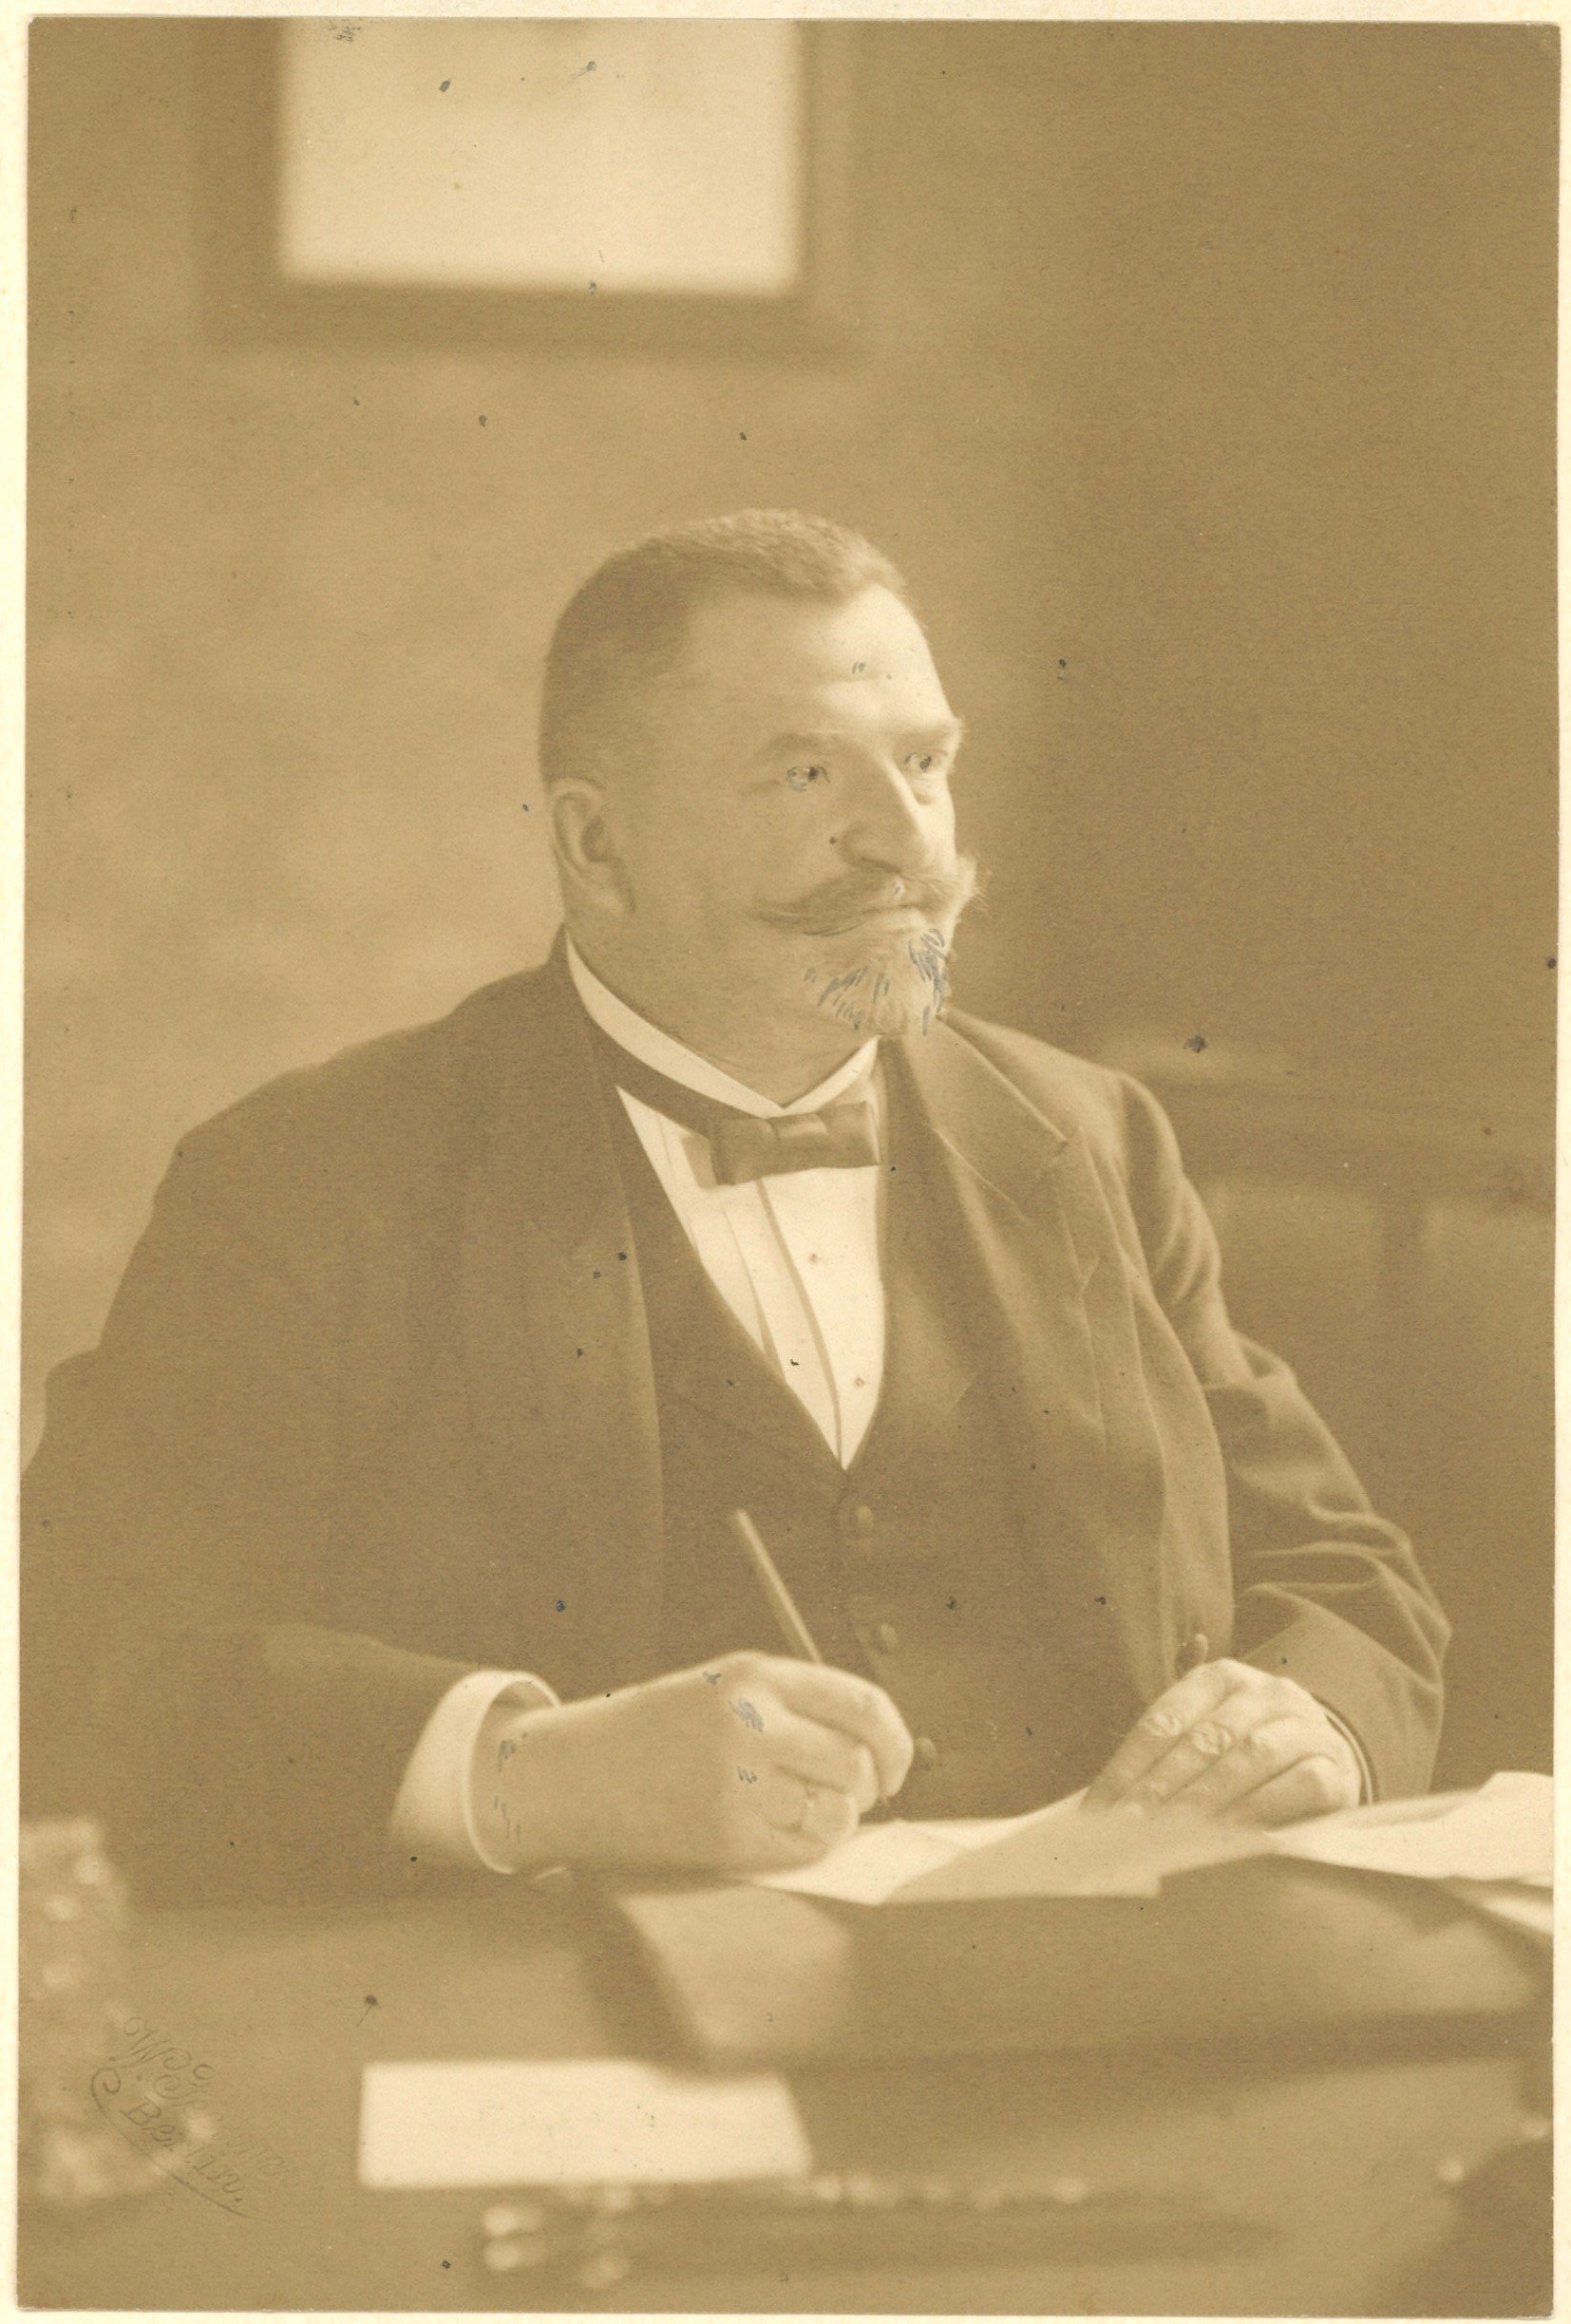 Stubenrauch, Ernst (von) (1853-1909), Landrat, Polizeipräsident (Landesgeschichtliche Vereinigung für die Mark Brandenburg e.V., Archiv CC BY)